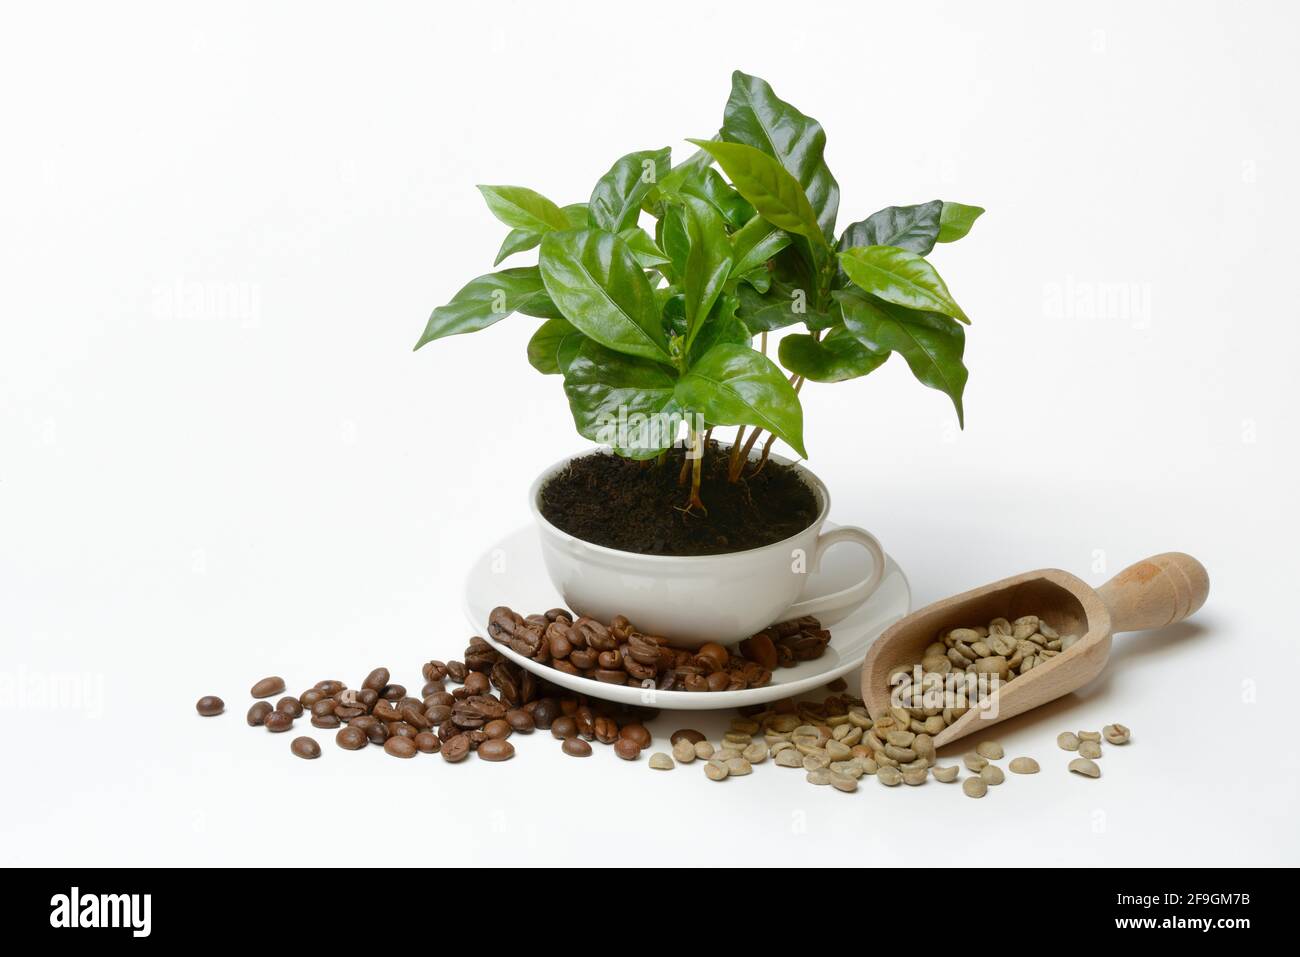 Kaffeepflanze in Tasse und gerösteten und grünen Kaffeebohnen, Deutschland  Stockfotografie - Alamy